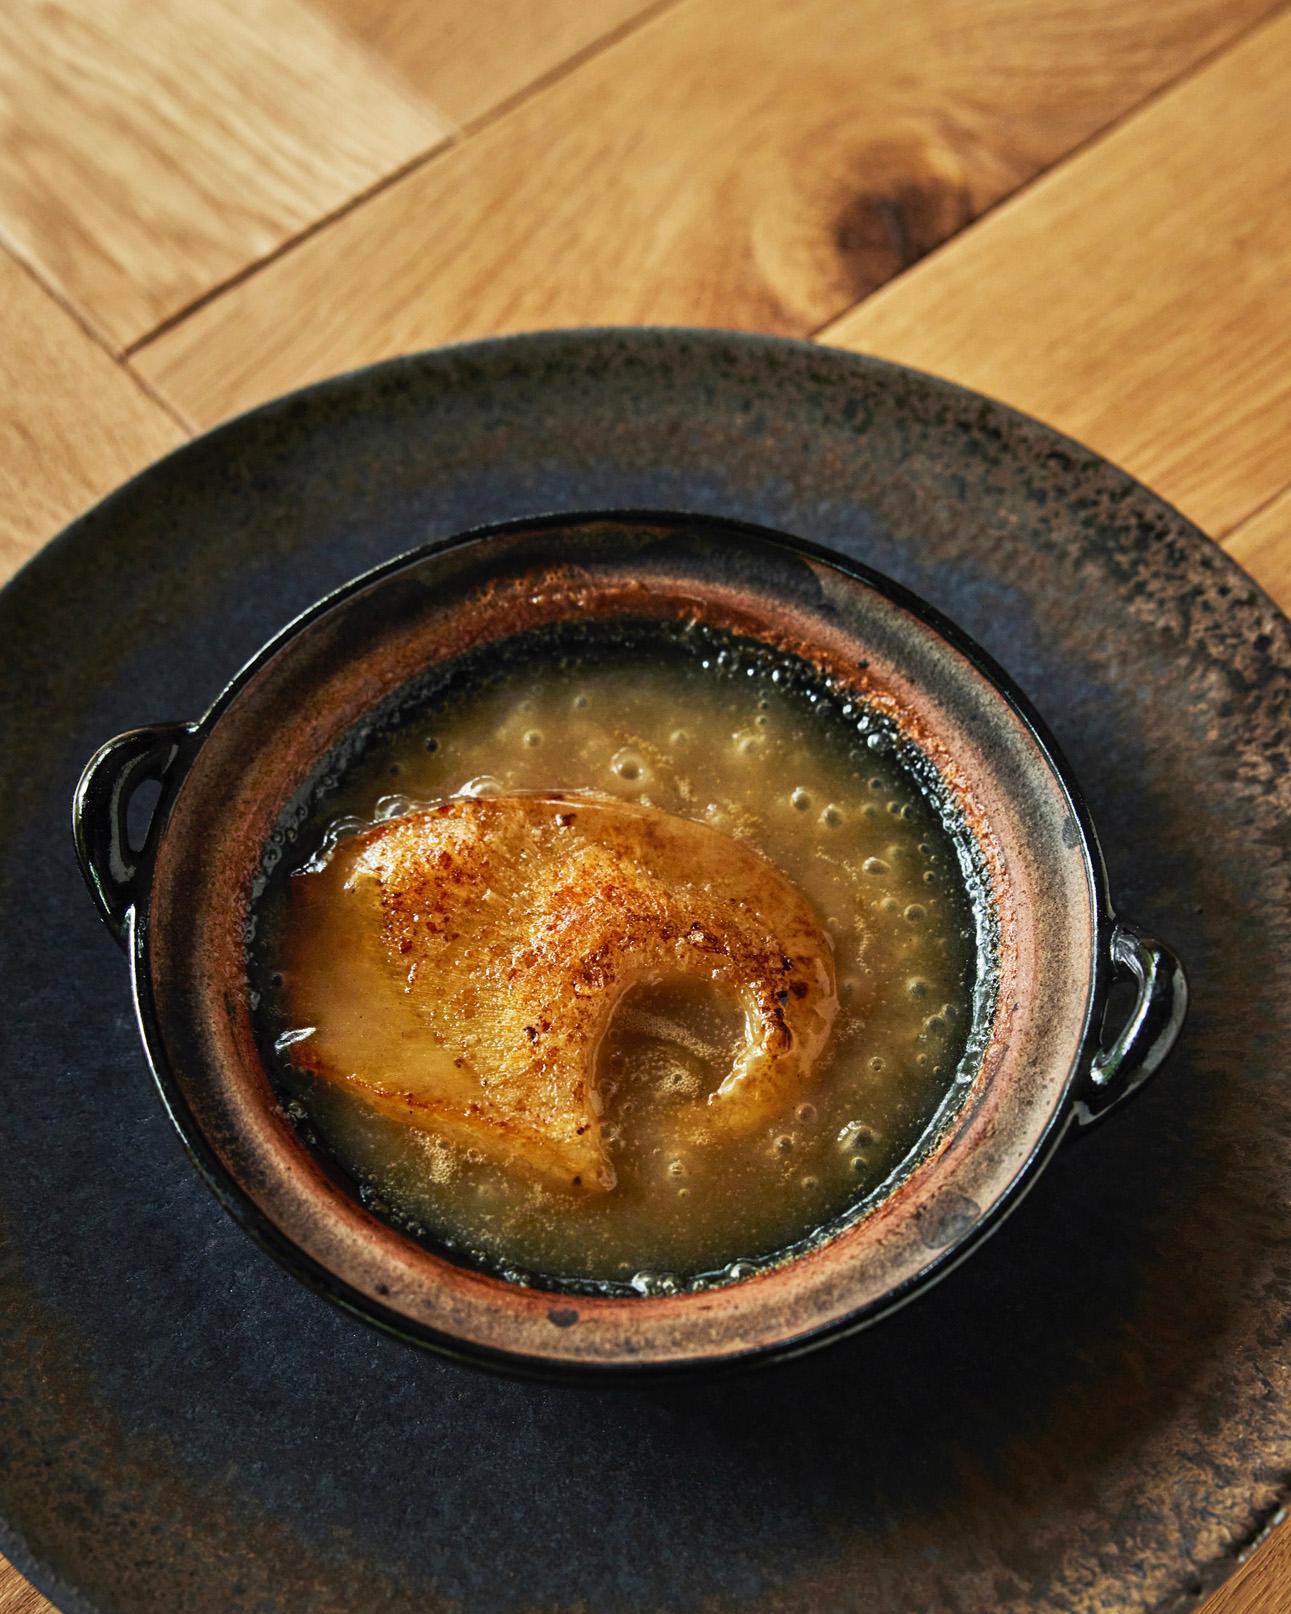 柔らかく蒸しあげたフカヒレと、美味鶏のガラやモミジを7～8時間煮込んだ白湯スープを合わせたひと皿。